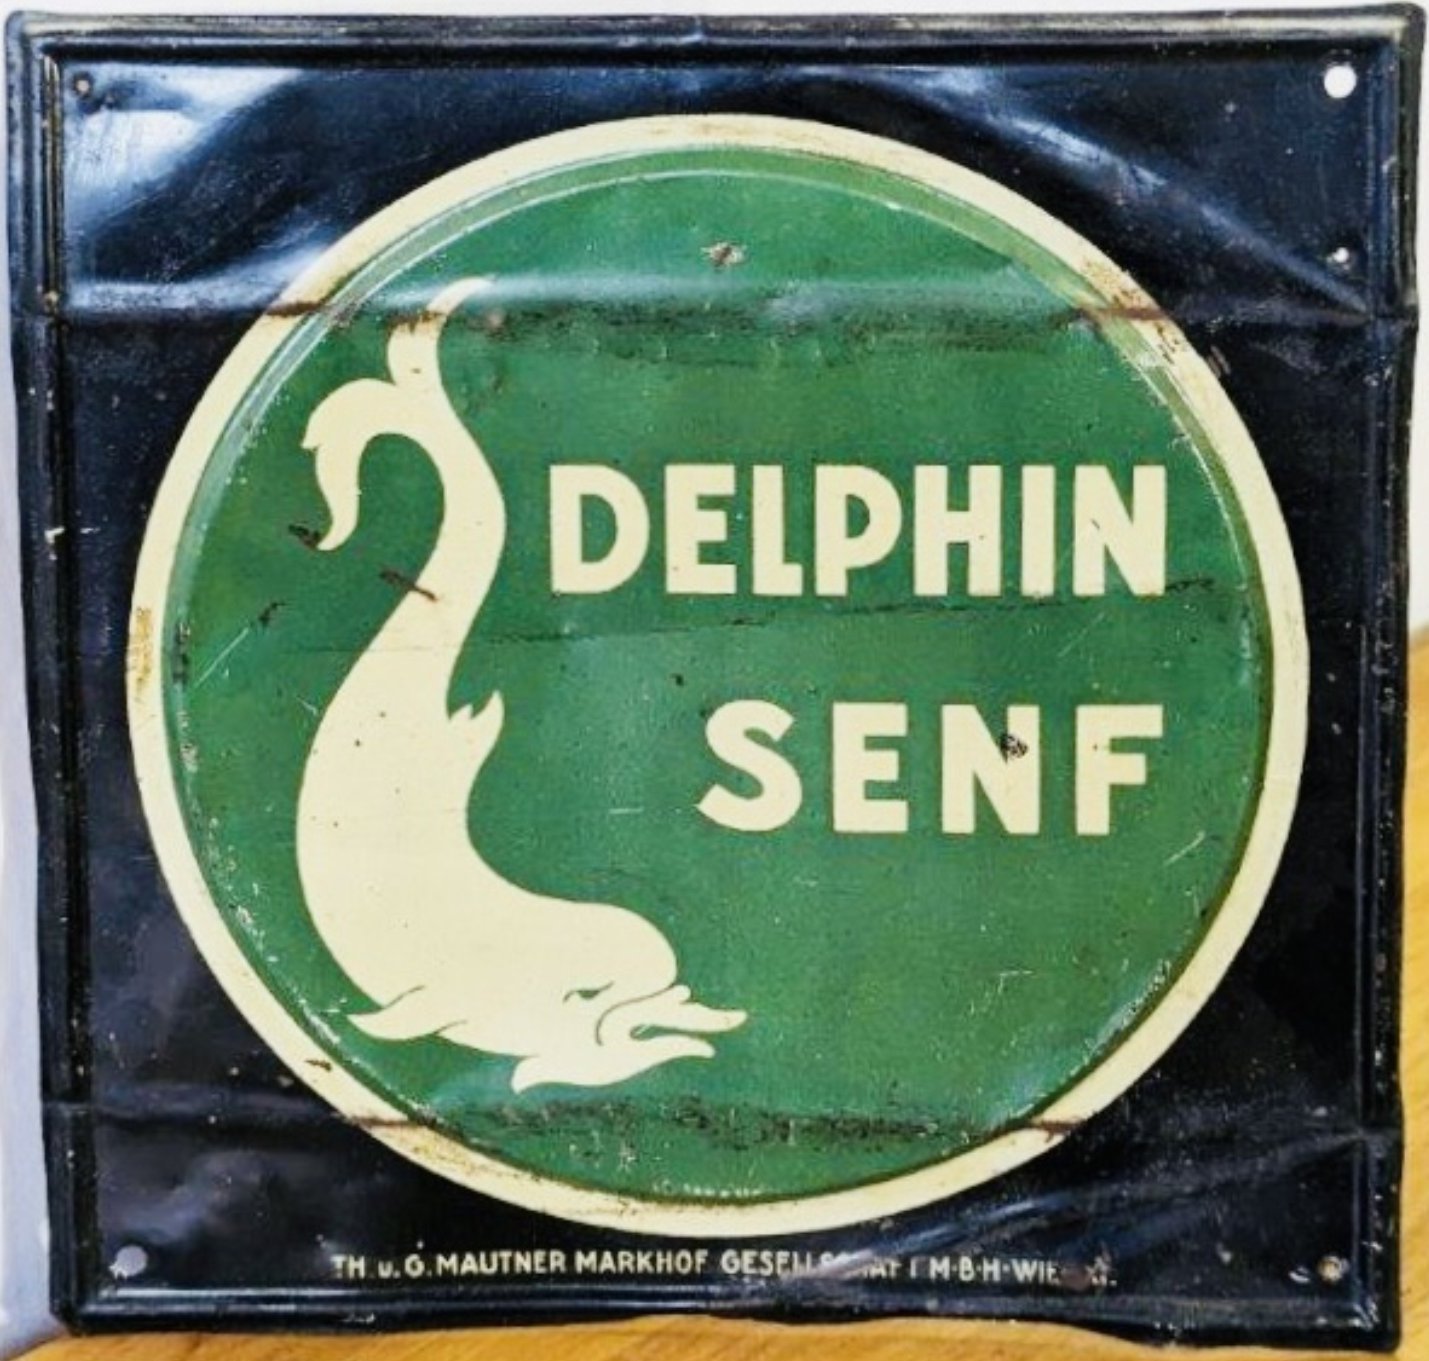 Delphin Senf